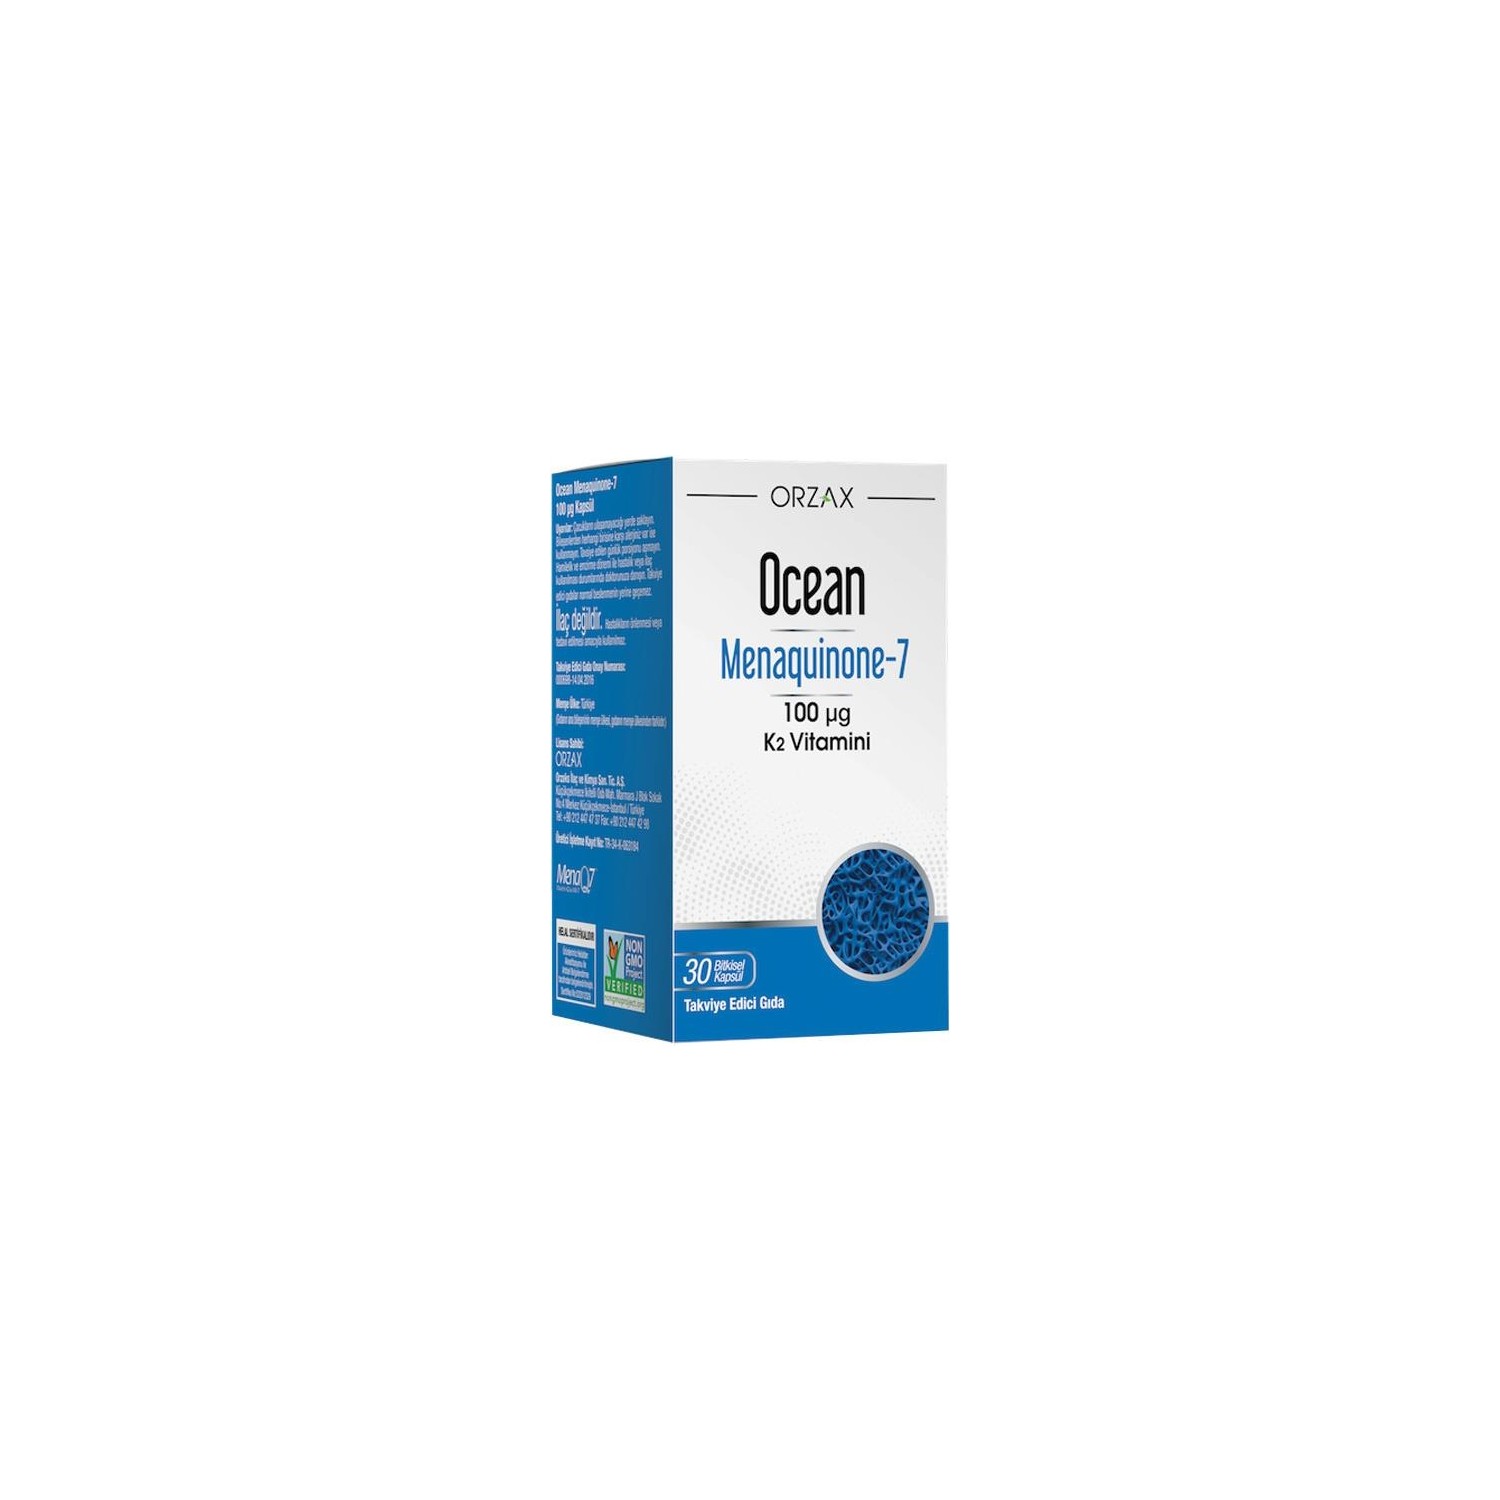 Пищевая добавка Orzax Mk-7, 30 капсул витамины антиоксиданты минералы solgar капсулы натуральный витамин к2 менахинон 7 660 мг